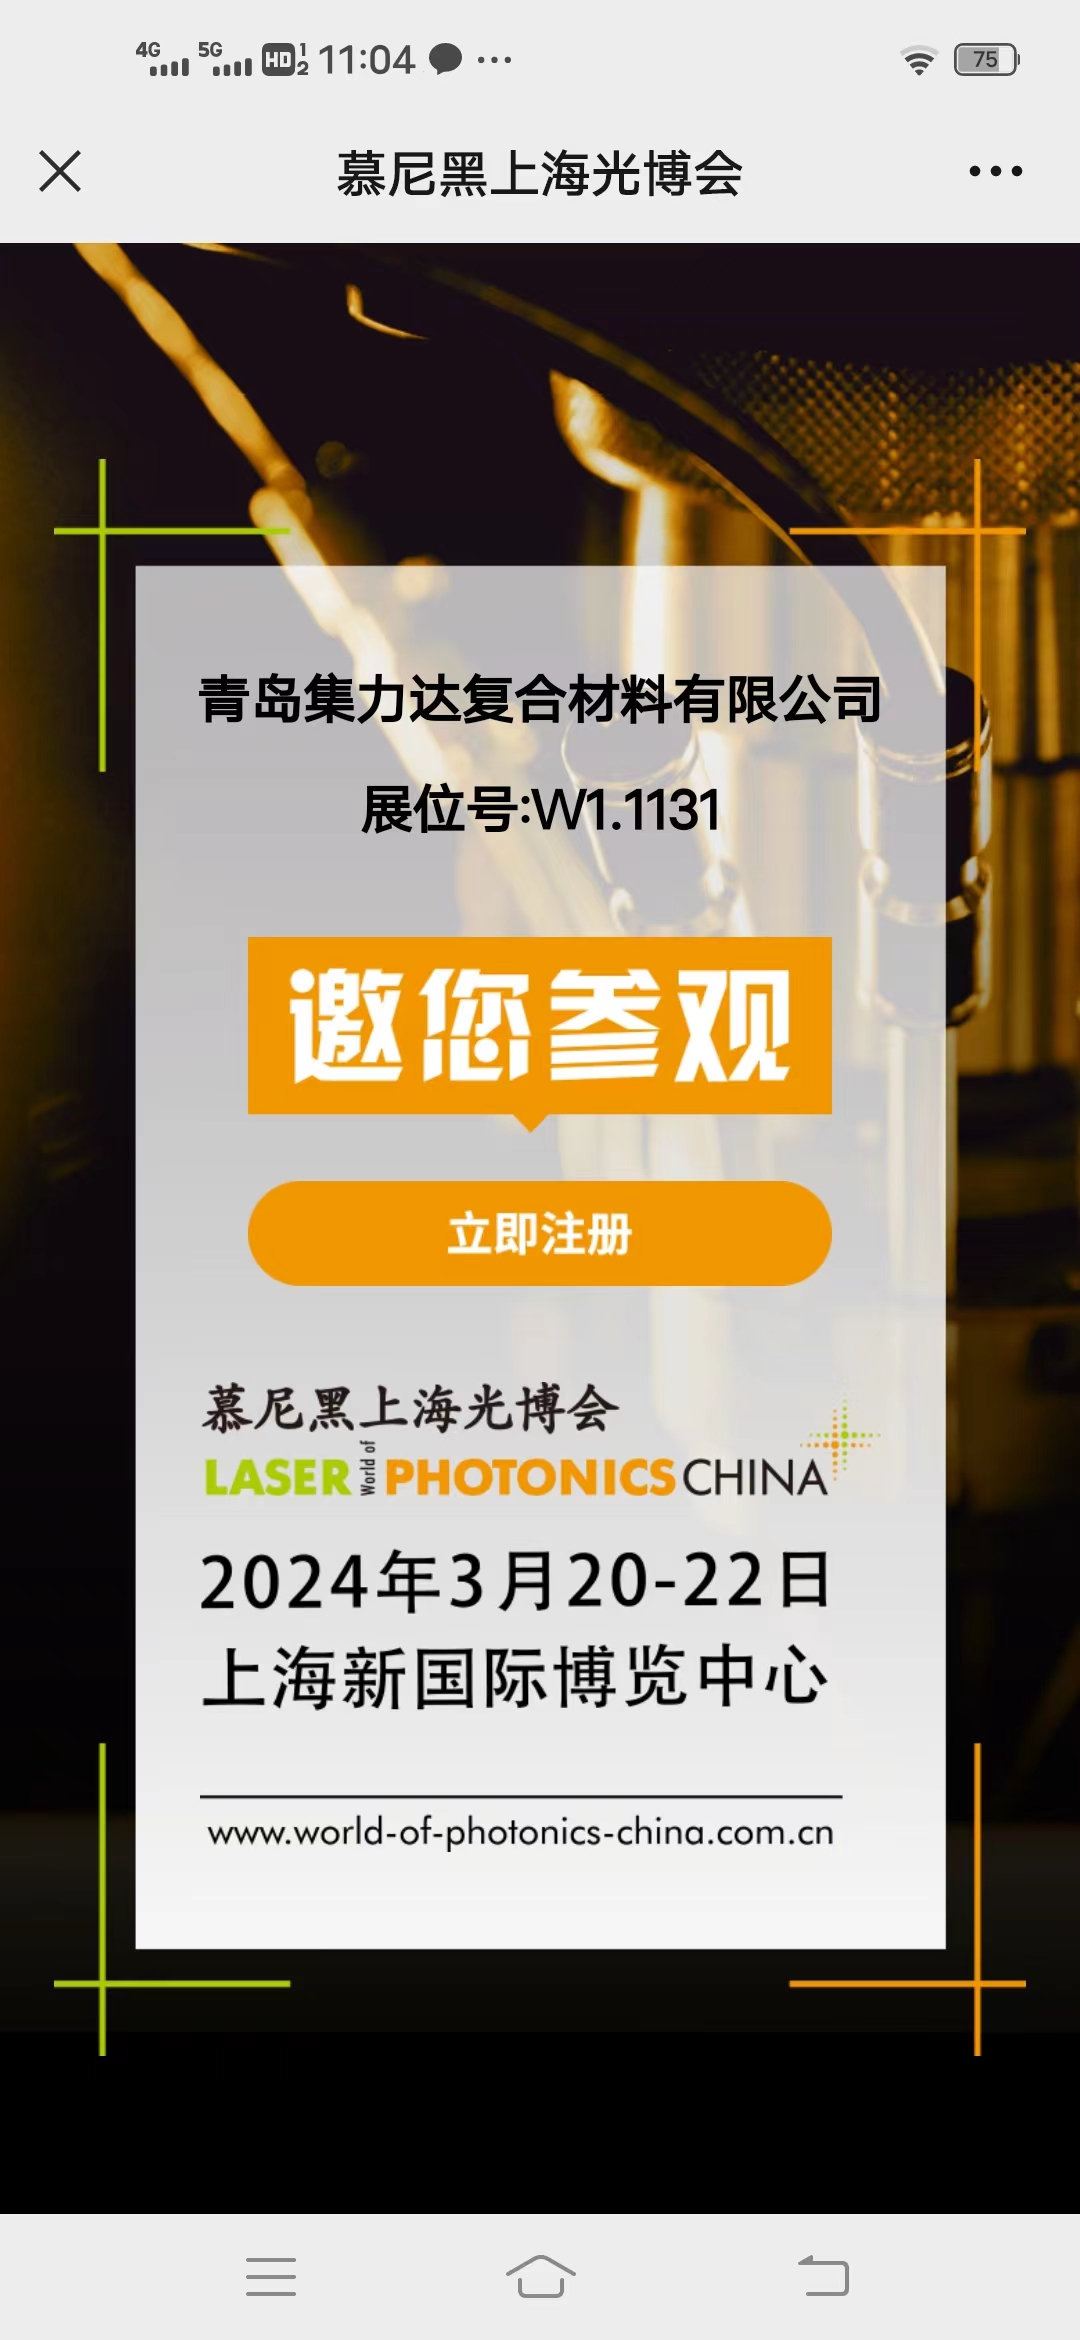 ยินดีที่ได้พบกันใน Laser China 2024